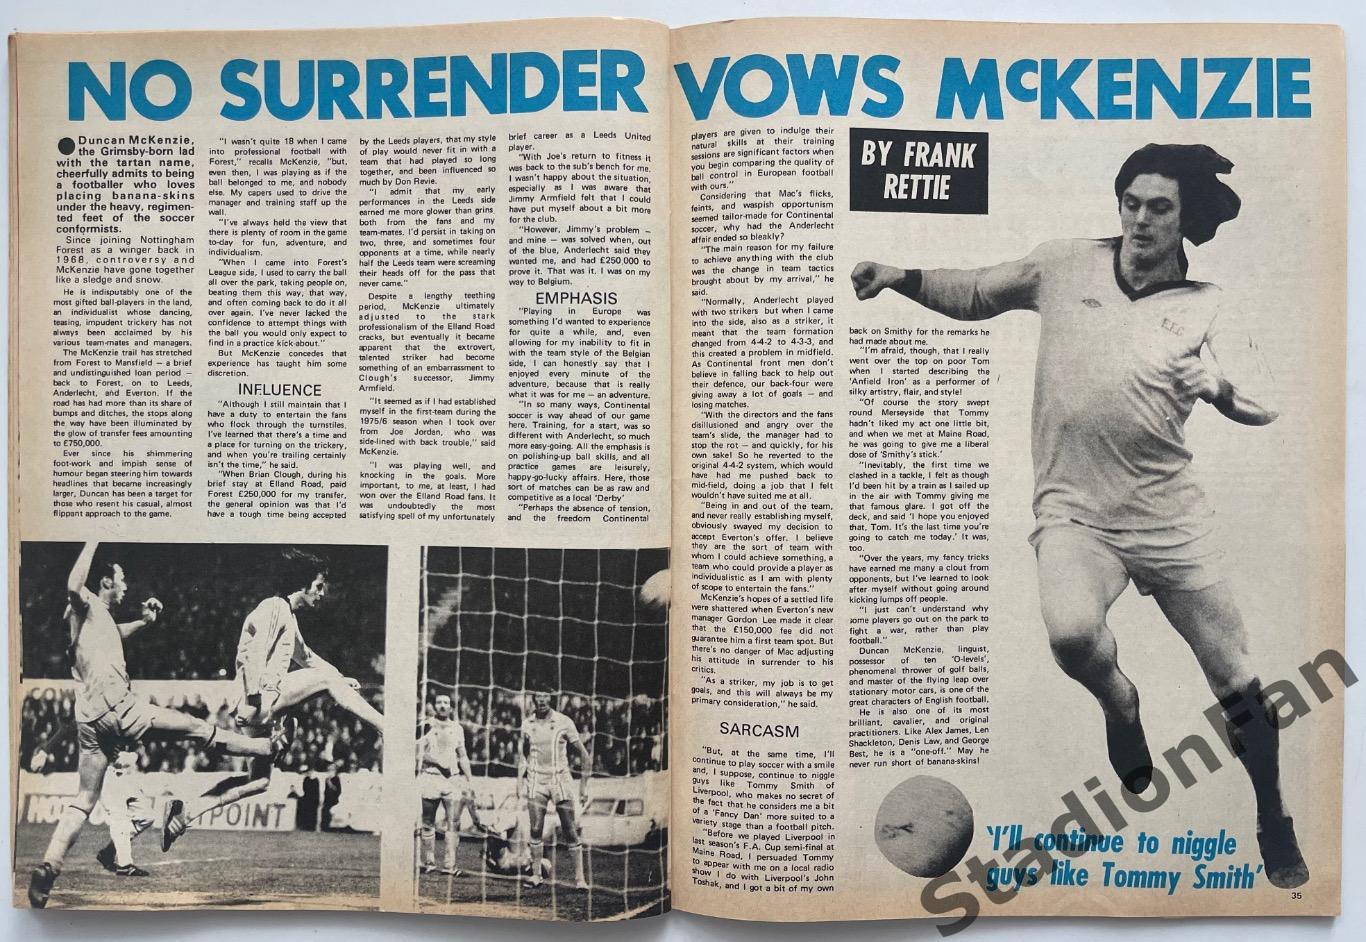 Журнал FOOTBALL - 1977 год, октябрь. 6